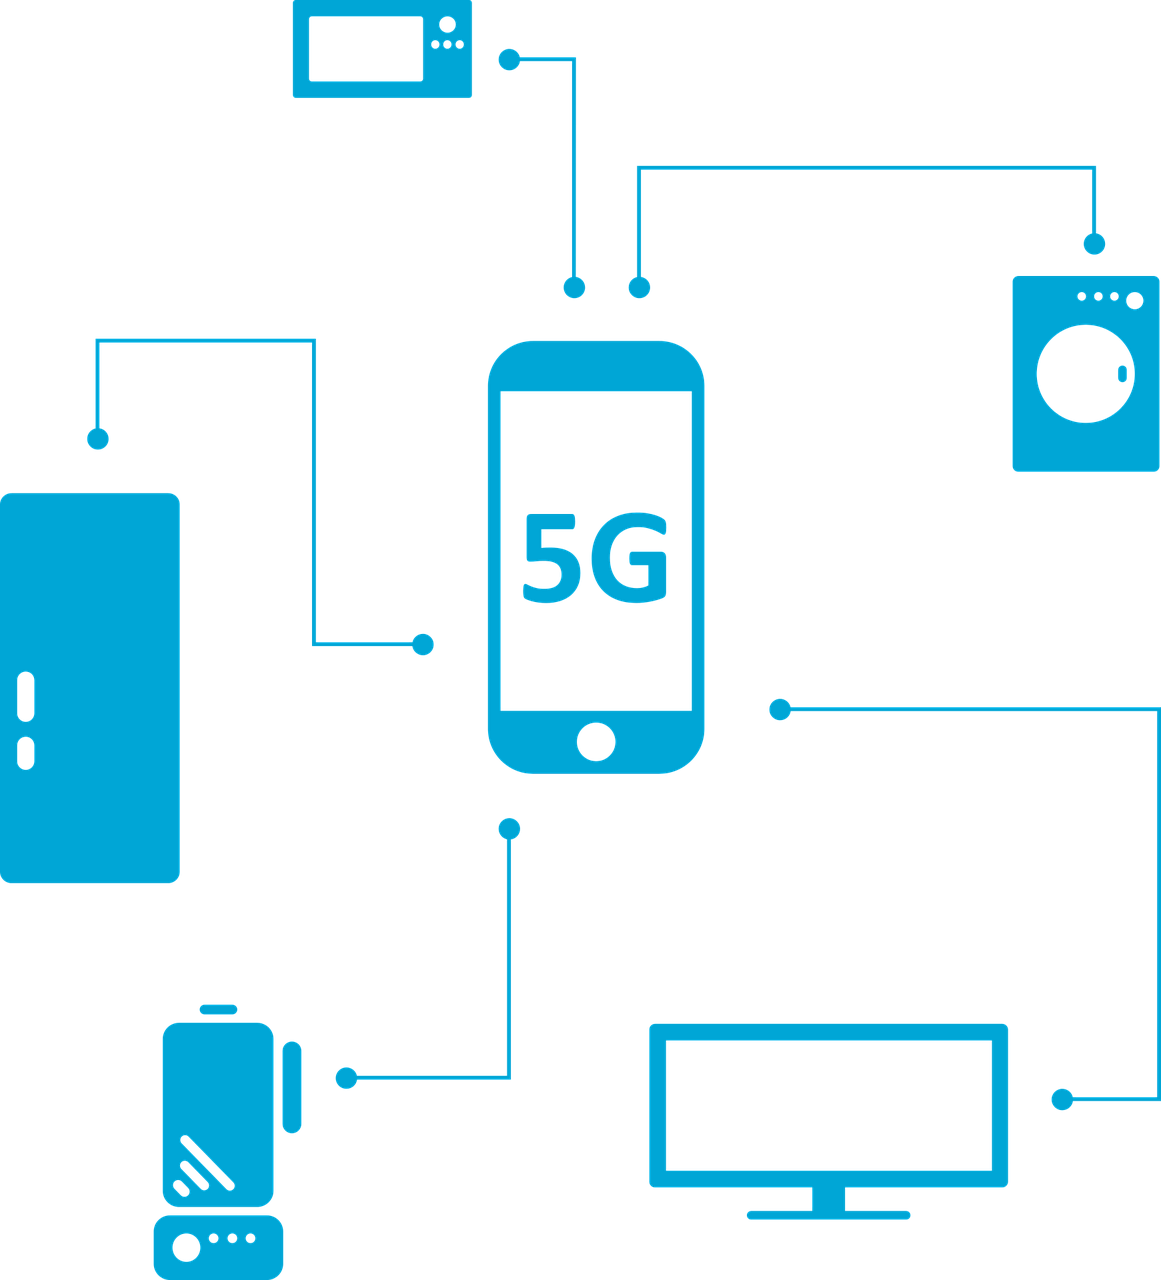 Das 5G-Netz kommt - aber wie?